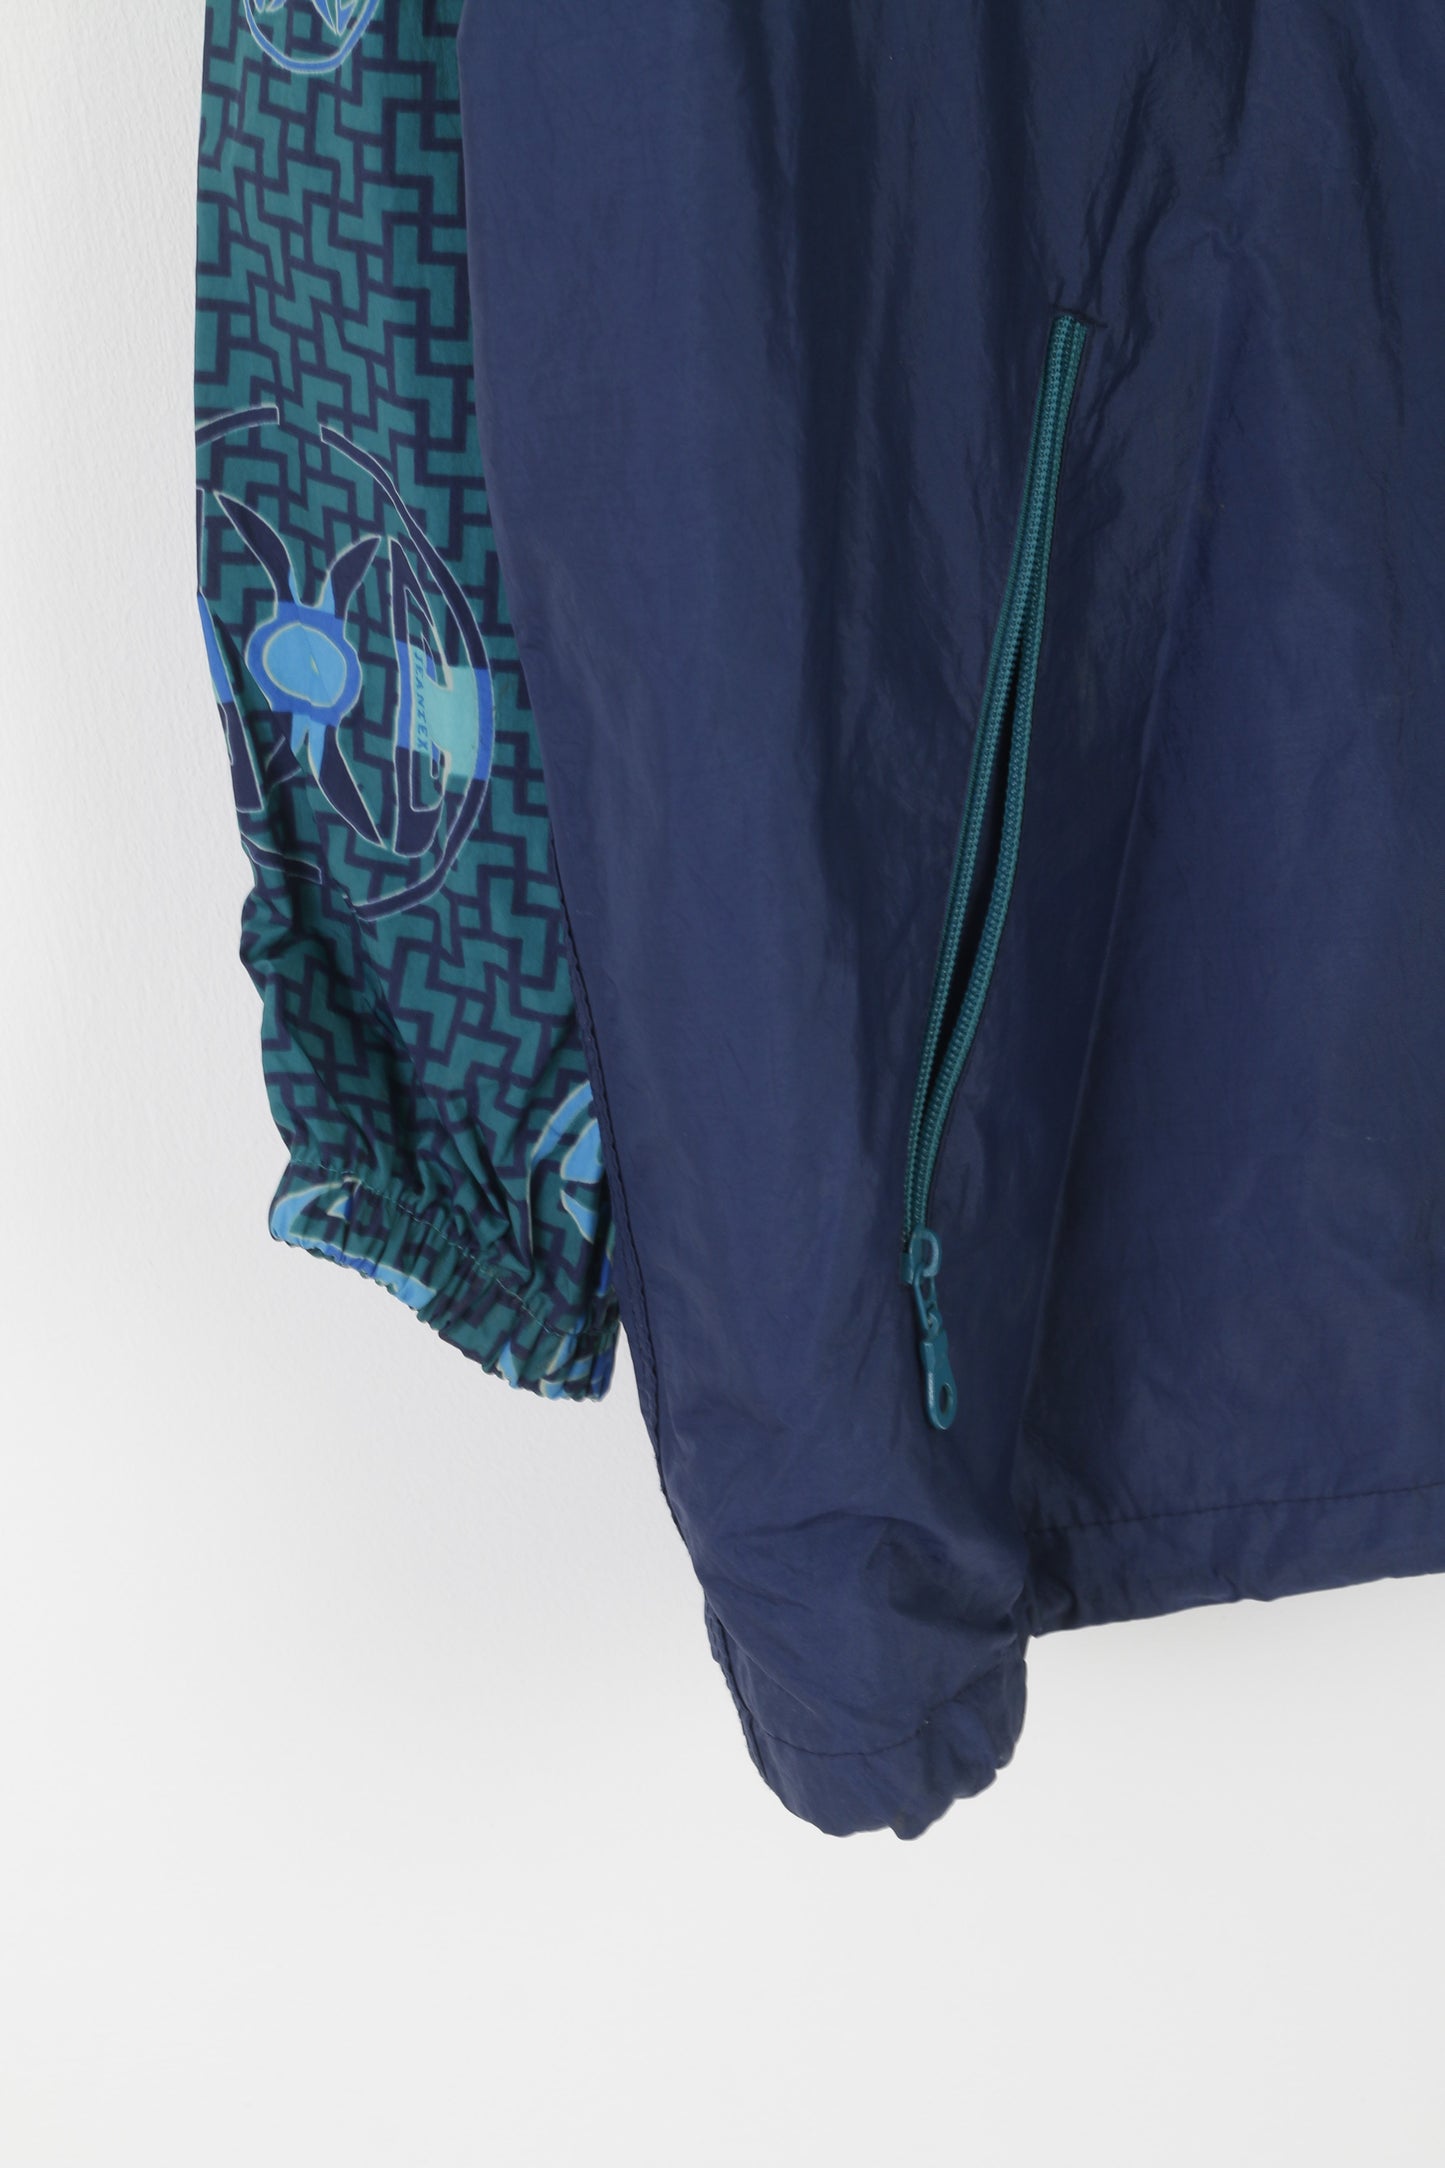 Jeantex Men 54/56 XL Jacket Green Nylon Waterproof Hidden Hood Vintage Zip Up Top